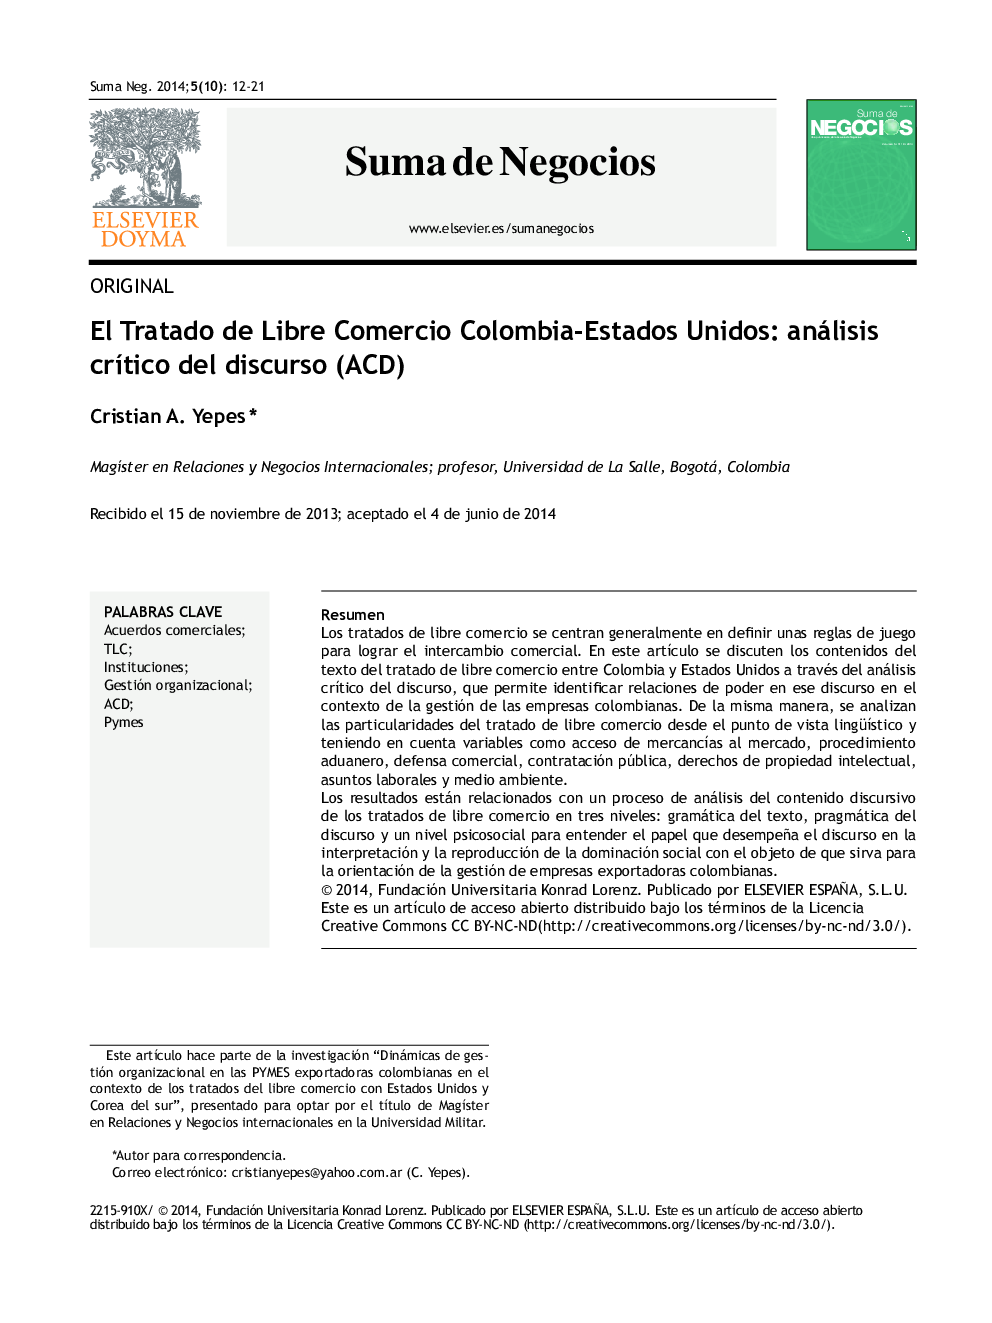 El Tratado de Libre Comercio Colombia-Estados Unidos: análisis crítico del discurso (ACD) *